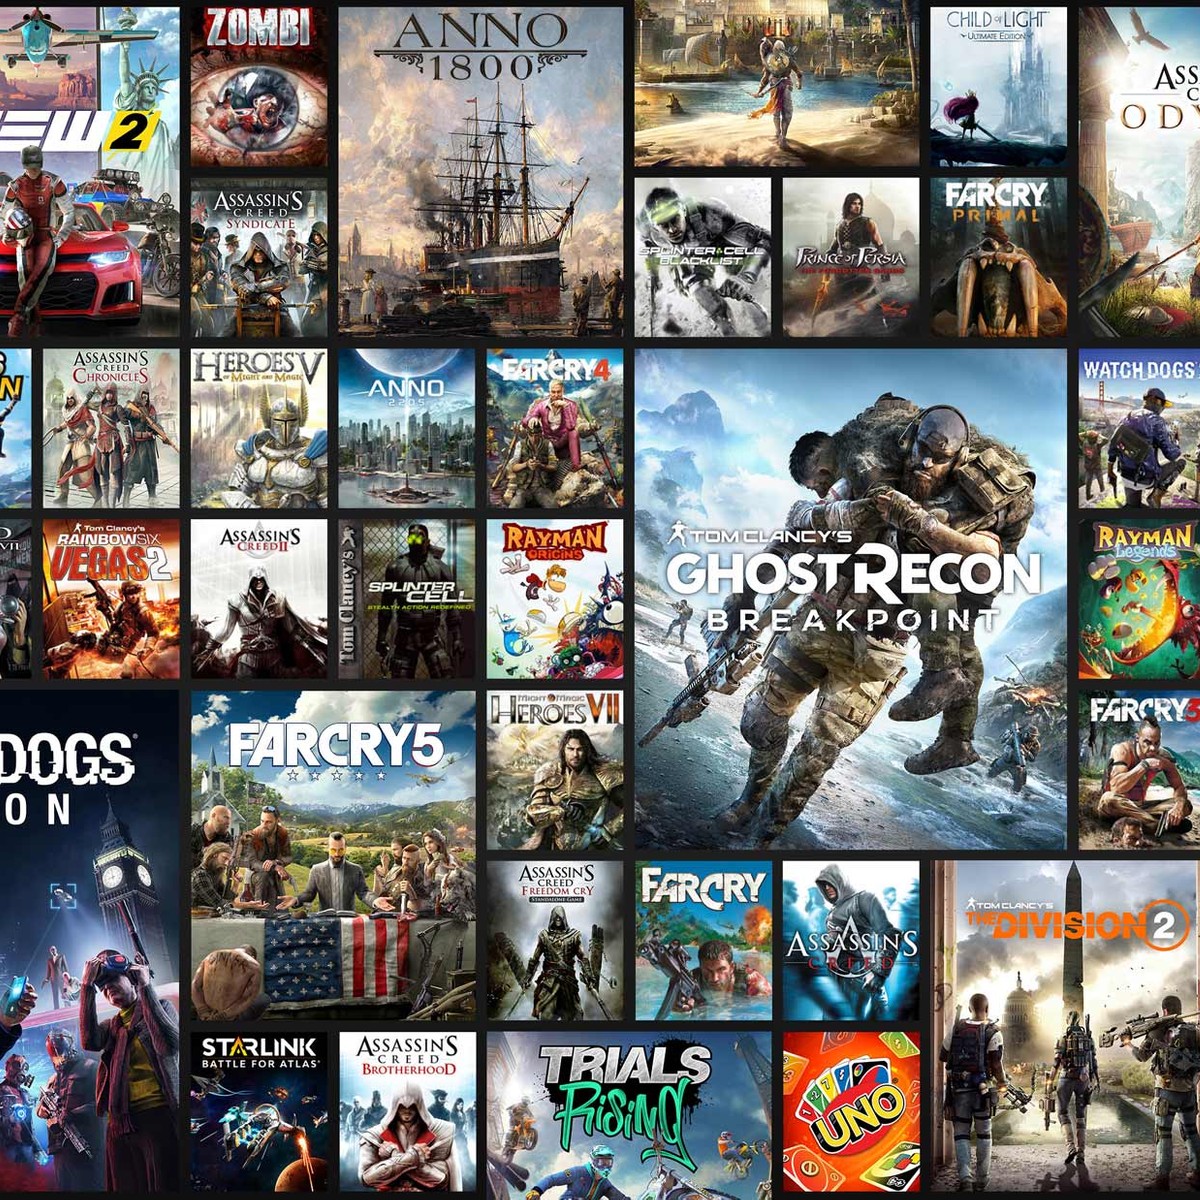 Xbox Game Pass: confira novos jogos de maio - Game Arena